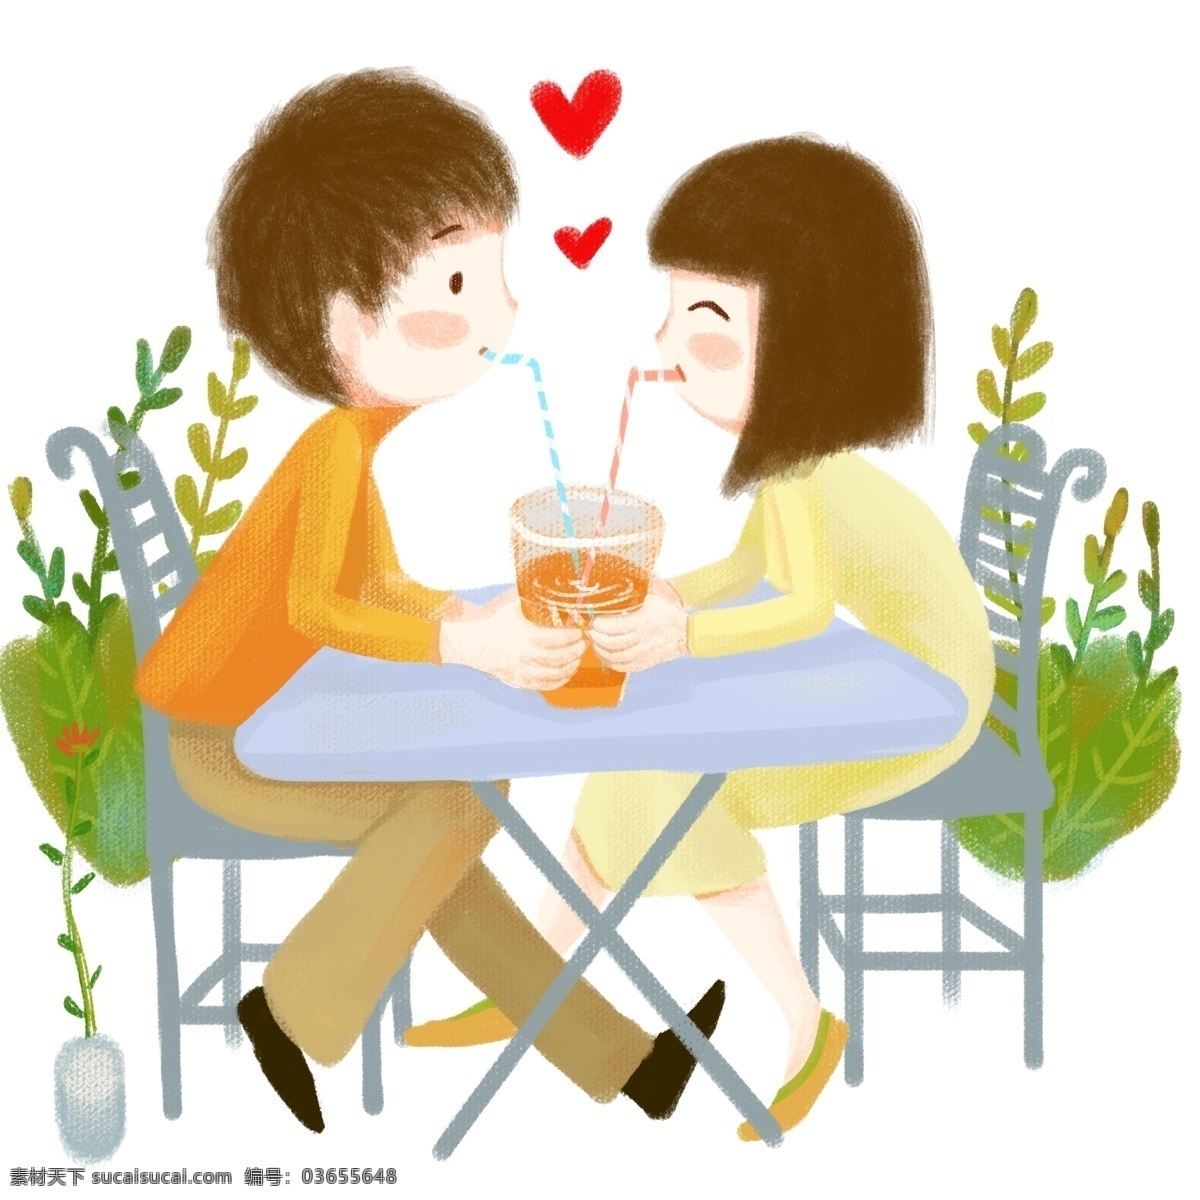 情人节 喝 饮料 情侣 人物 插画 绿色的植物 黄色的饮料 红色的桃心 灰色的桌子 恩爱的情侣